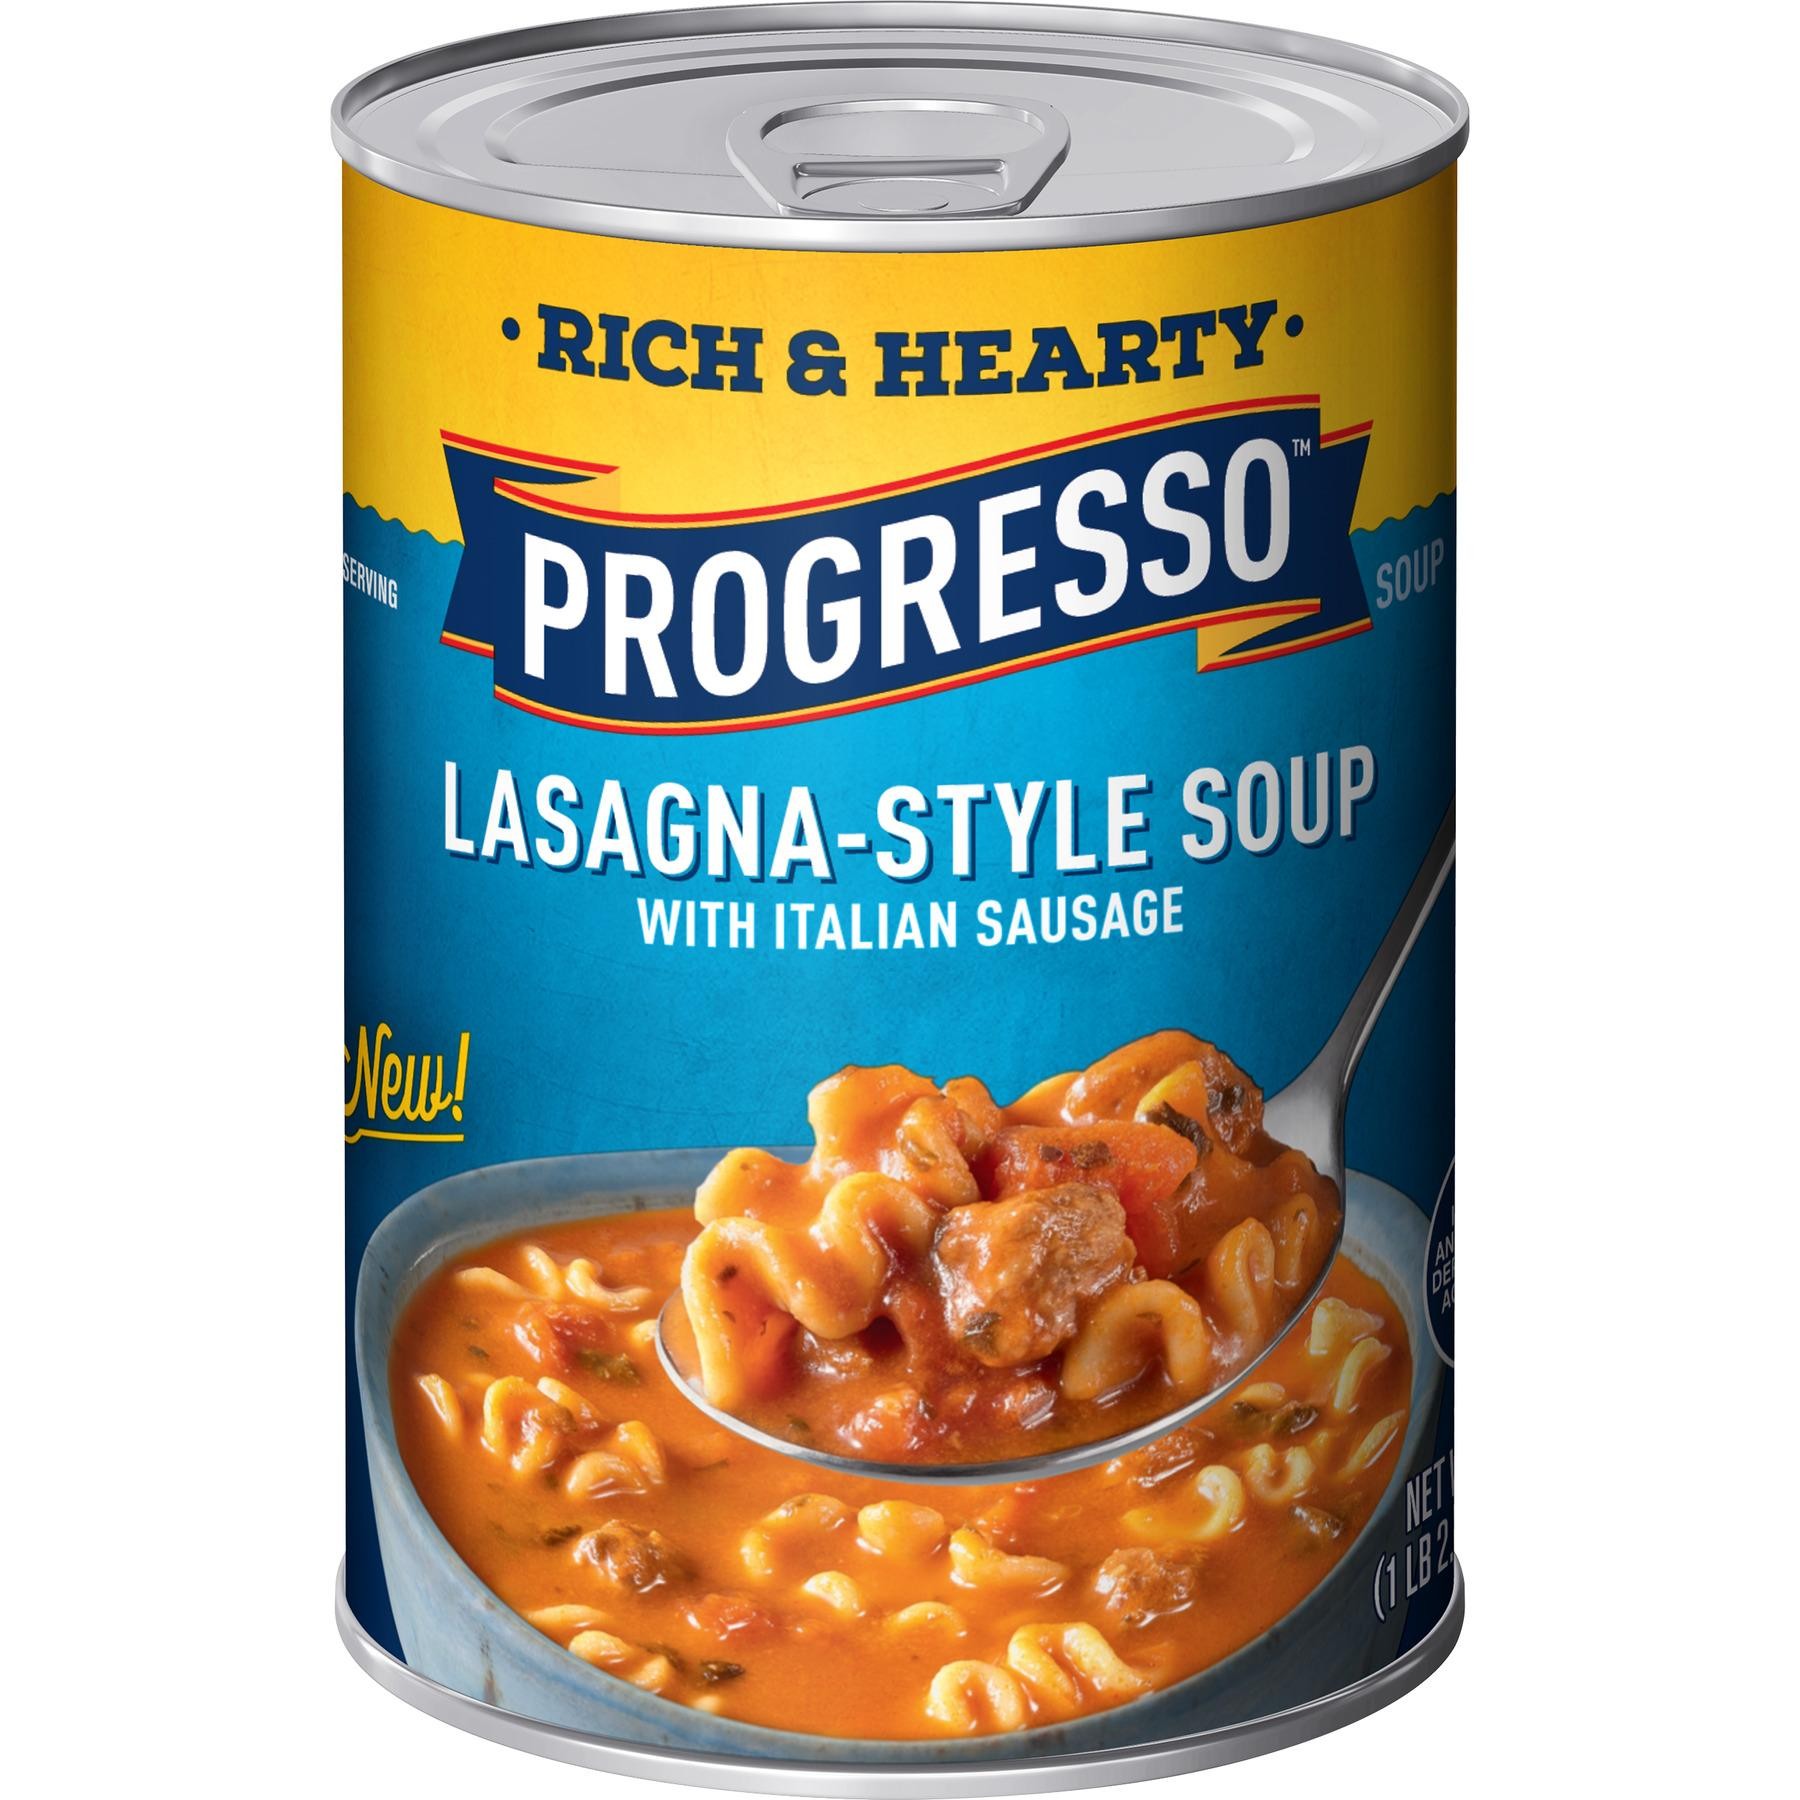 Lasagna-Style Soup